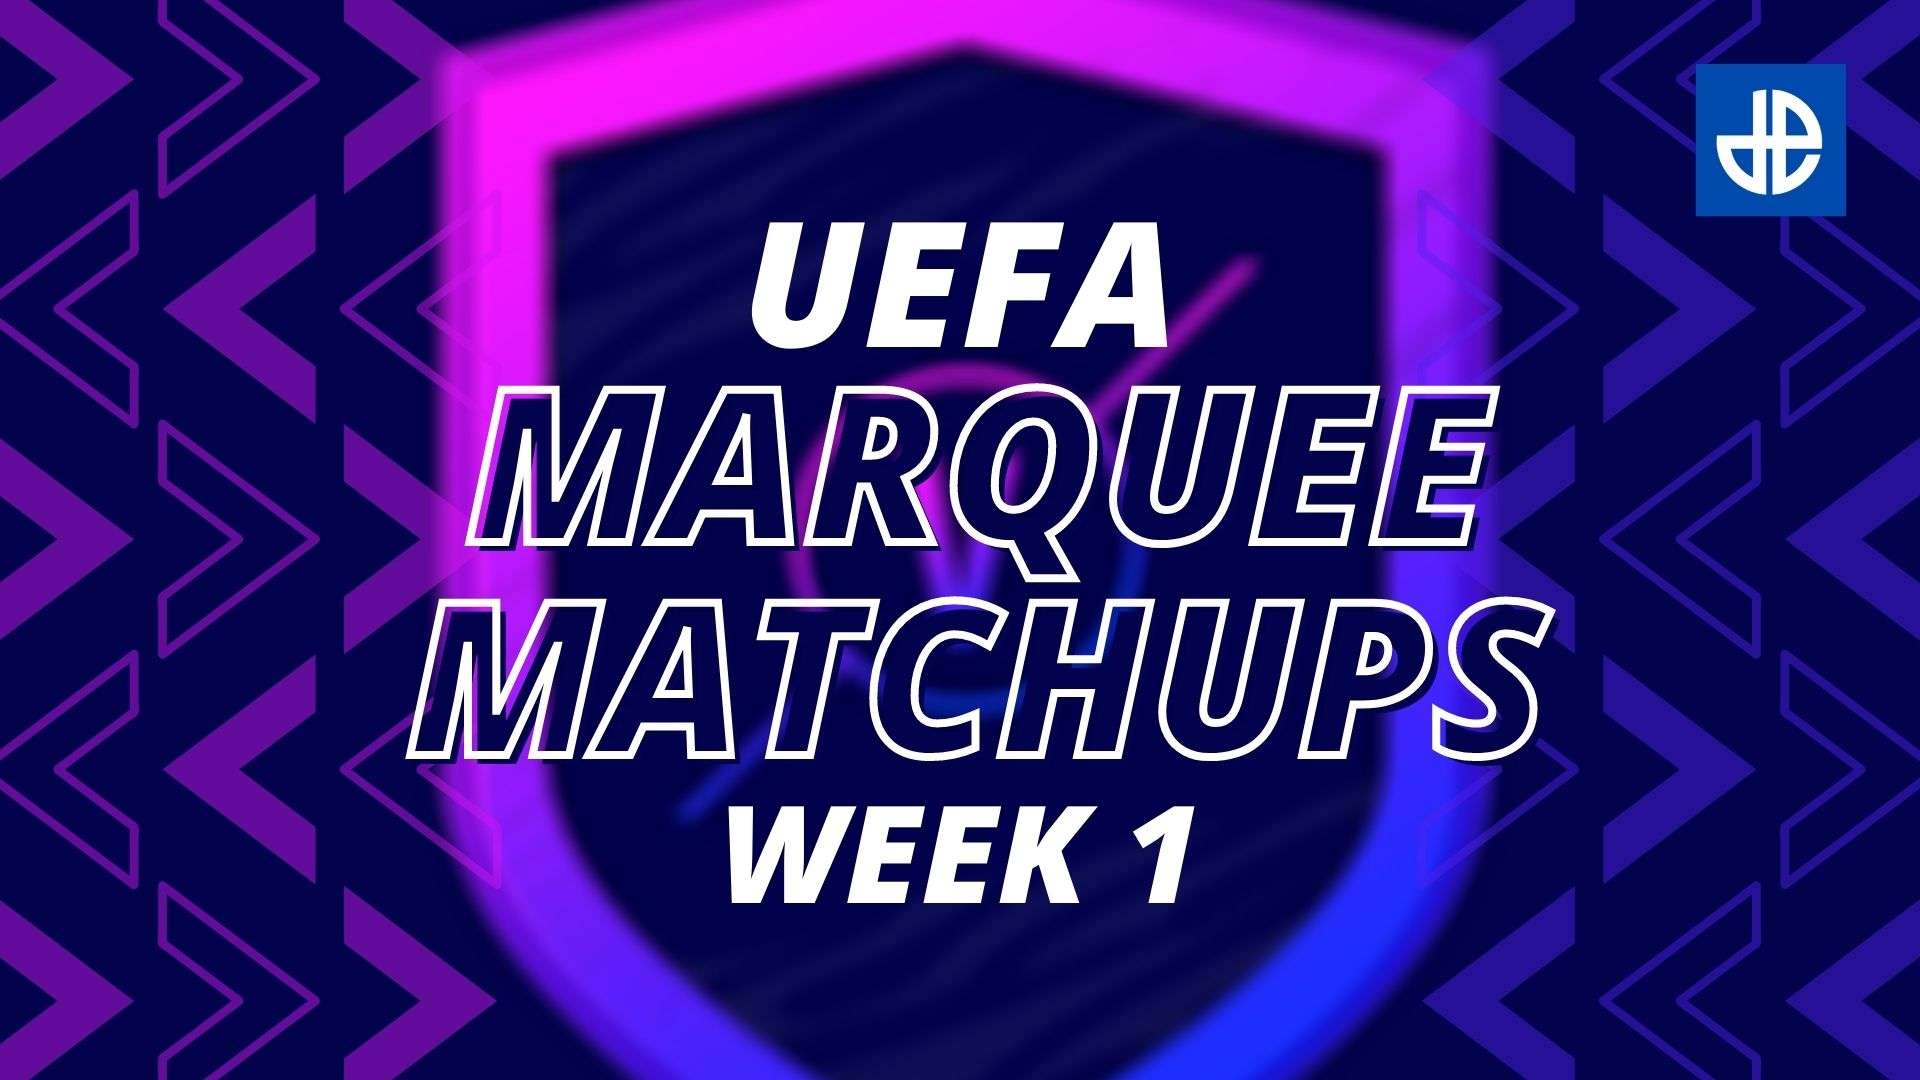 Uefa Marquee Matchups fifa 21